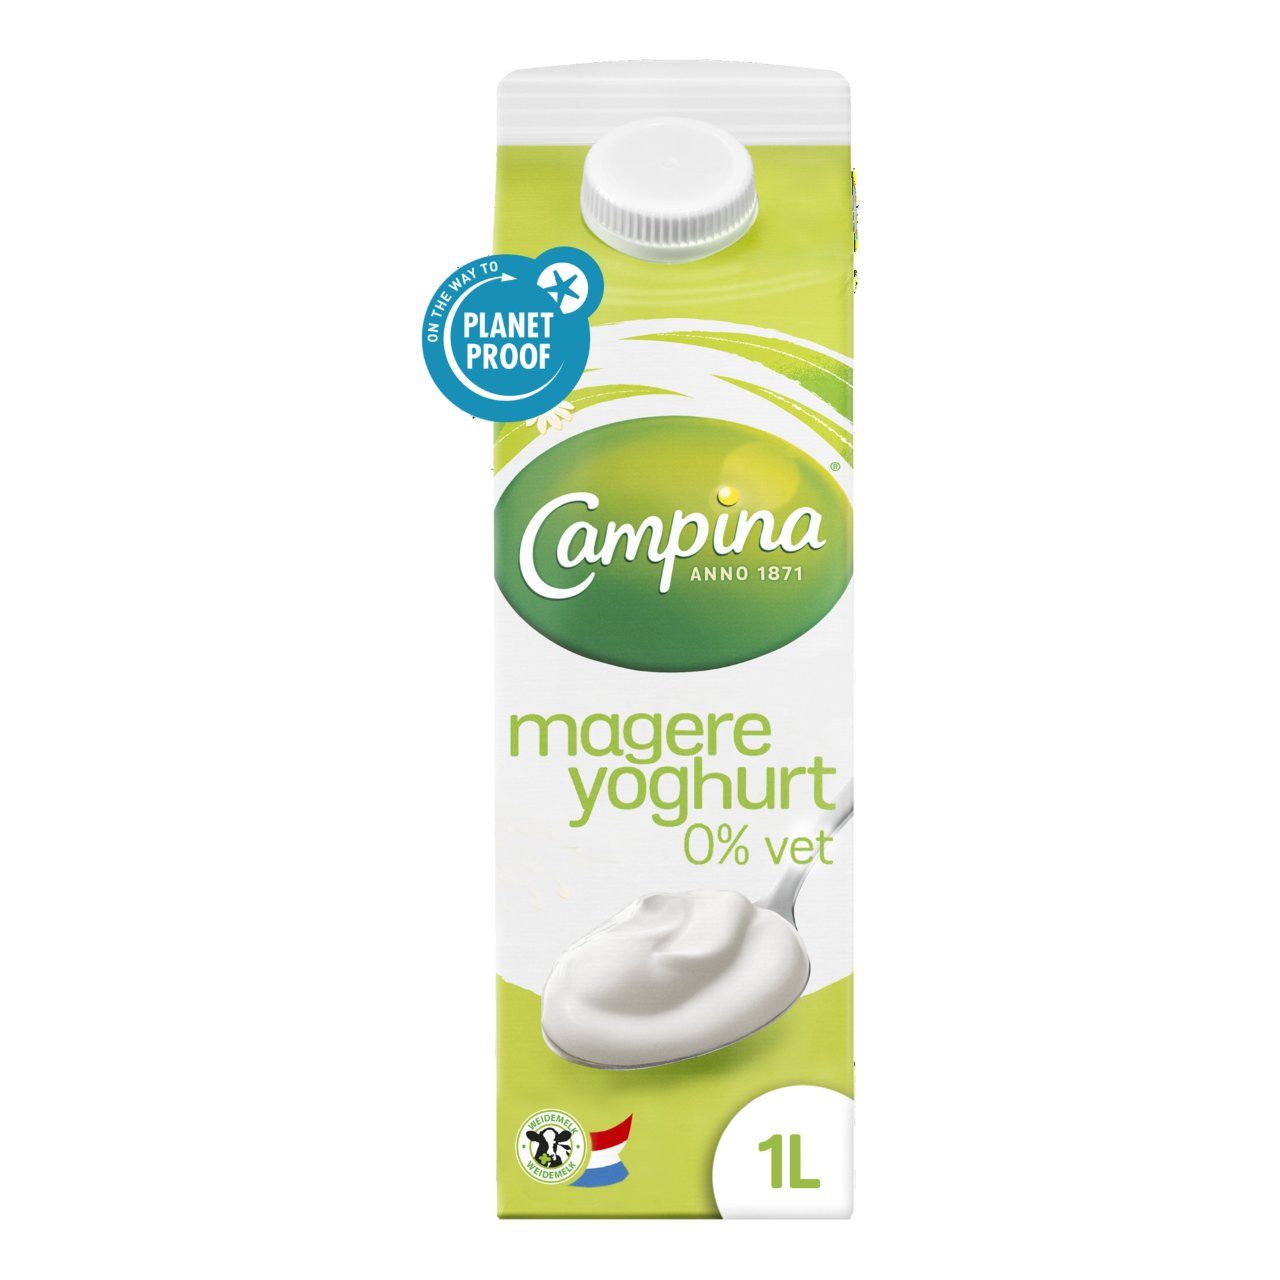 Magere yoghurt 0% Vet